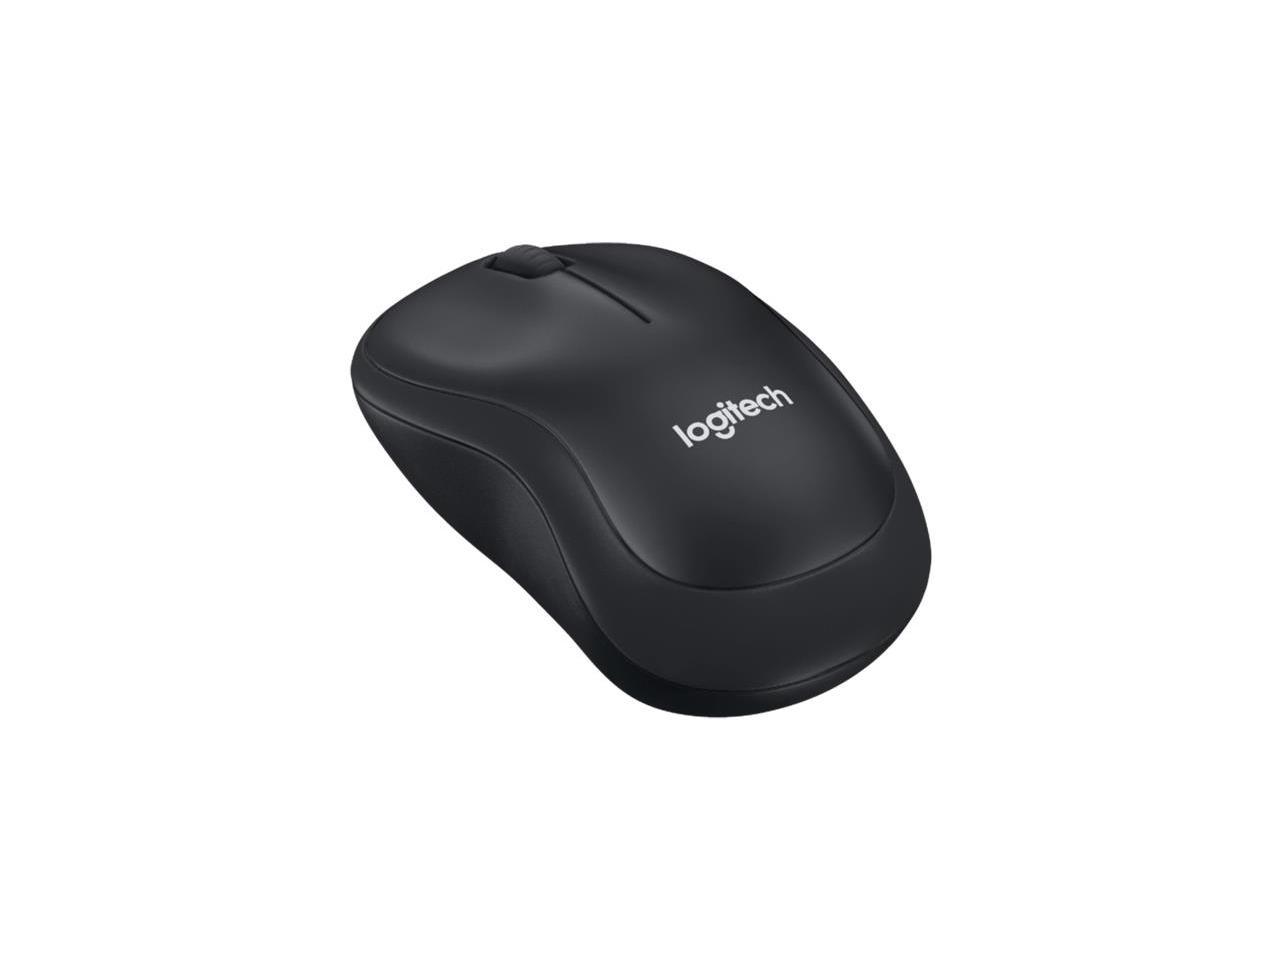 Logitech B220 Silent - Mouse - optical - 3 buttons - wireless - 2.4 GHz - USB wireless receiver